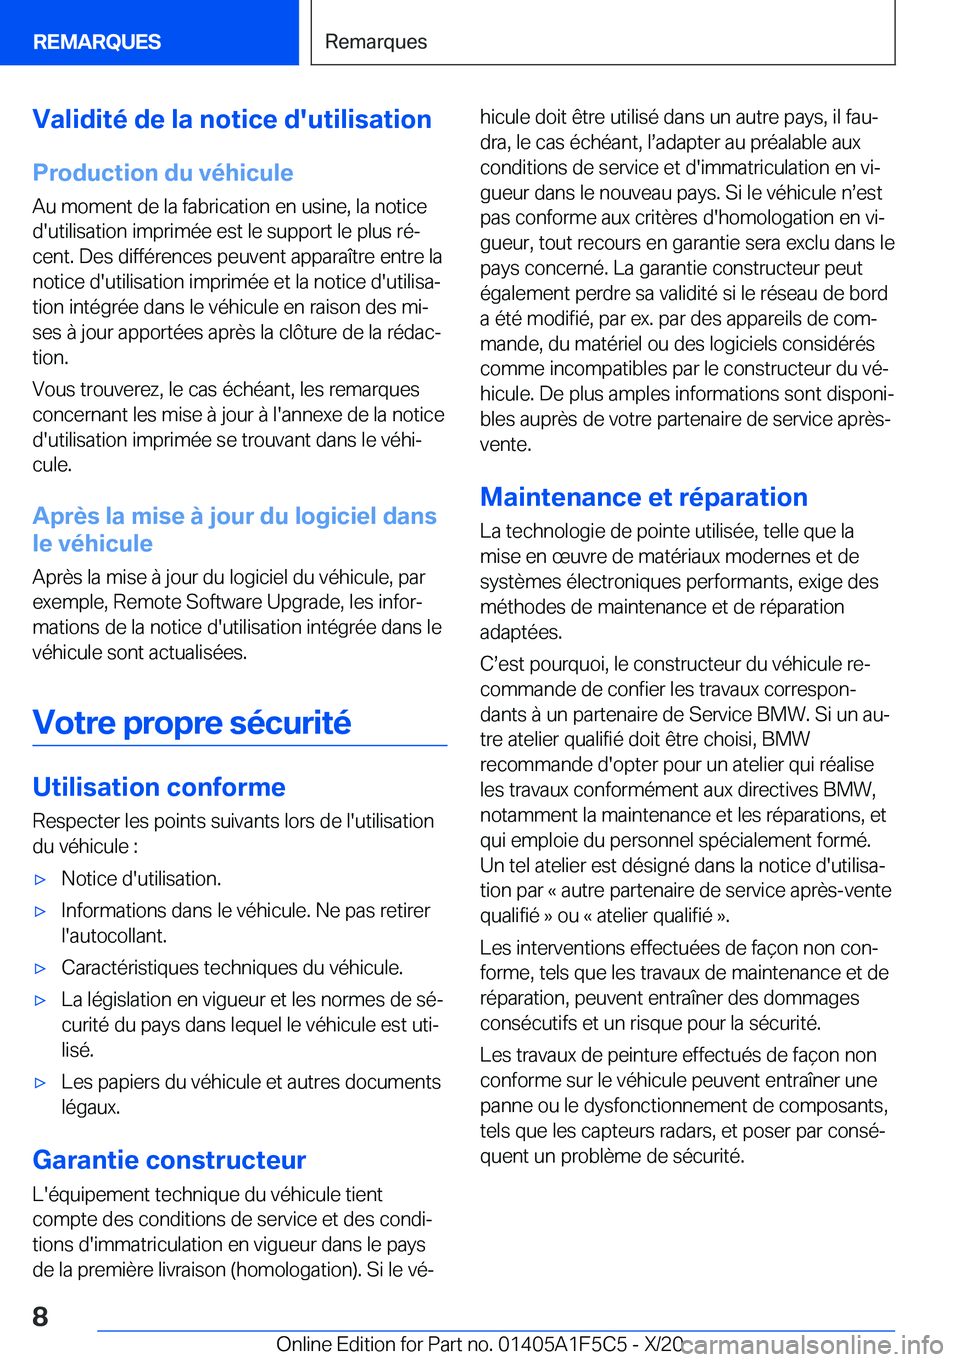 BMW X4 M 2021  Notices Demploi (in French) �V�a�l�i�d�i�t�é��d�e��l�a��n�o�t�i�c�e��d�'�u�t�i�l�i�s�a�t�i�o�n
�P�r�o�d�u�c�t�i�o�n��d�u��v�é�h�i�c�u�l�e
�A�u��m�o�m�e�n�t��d�e��l�a��f�a�b�r�i�c�a�t�i�o�n��e�n��u�s�i�n�e�,��l